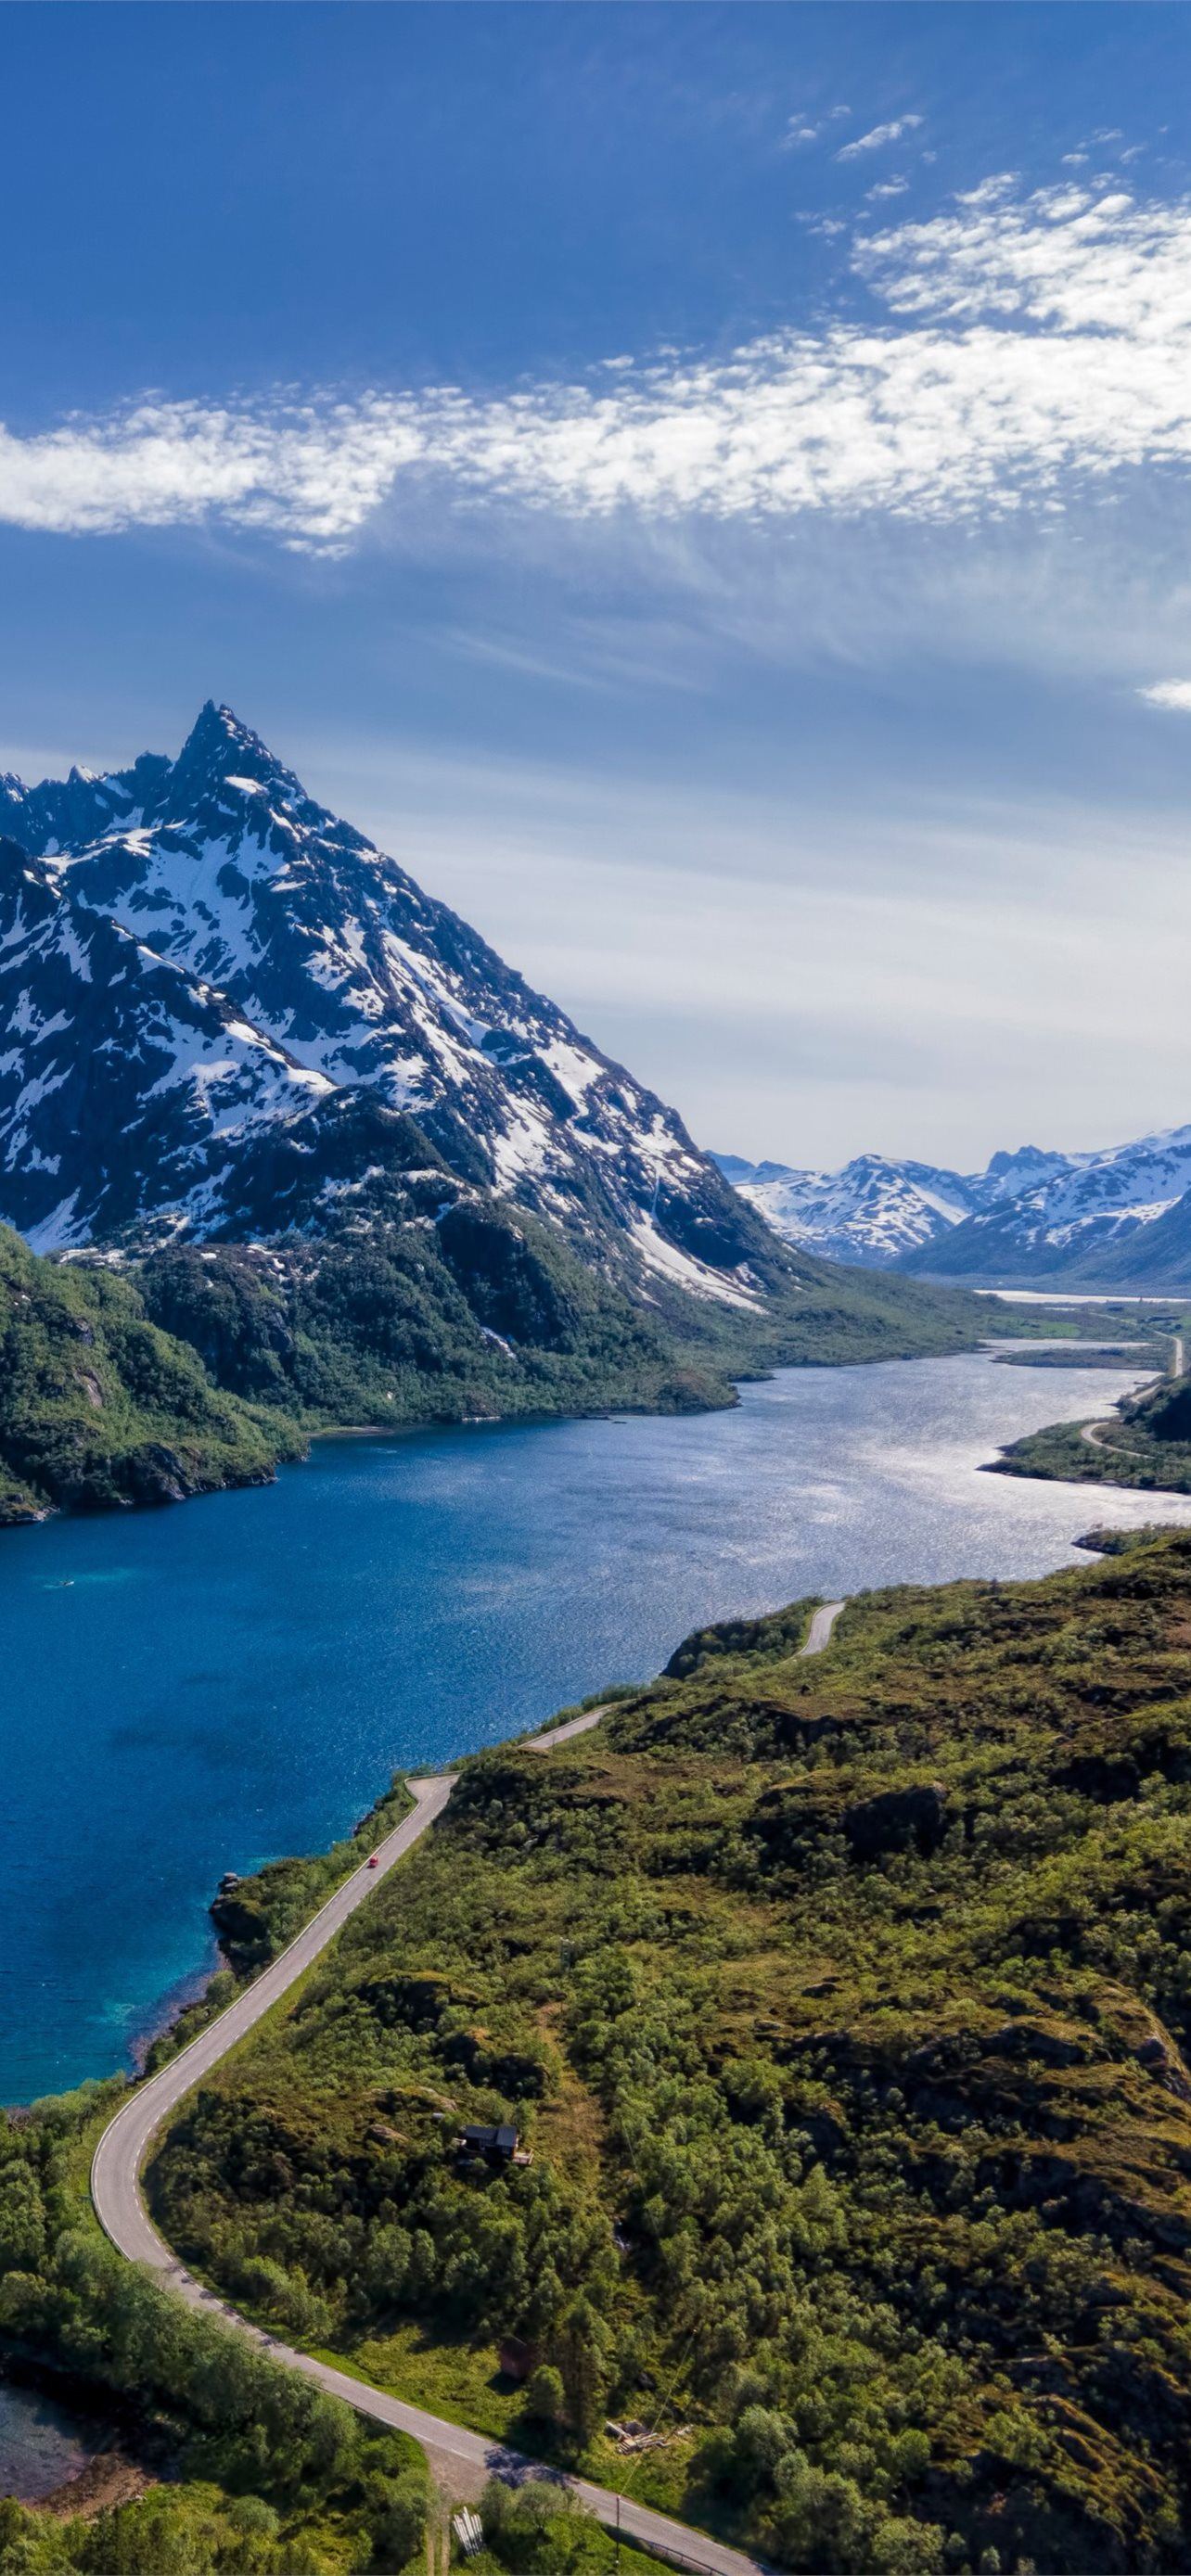 Lofoten Na Uy là một trong những địa điểm du lịch nổi tiếng trên thế giới và bây giờ bạn có thể đưa nó trở thành hình nền cao cấp cho iPhone của mình. Hãy tận hưởng cảm giác thư giãn khi nhìn vào những ngọn núi tuyệt đẹp này. 